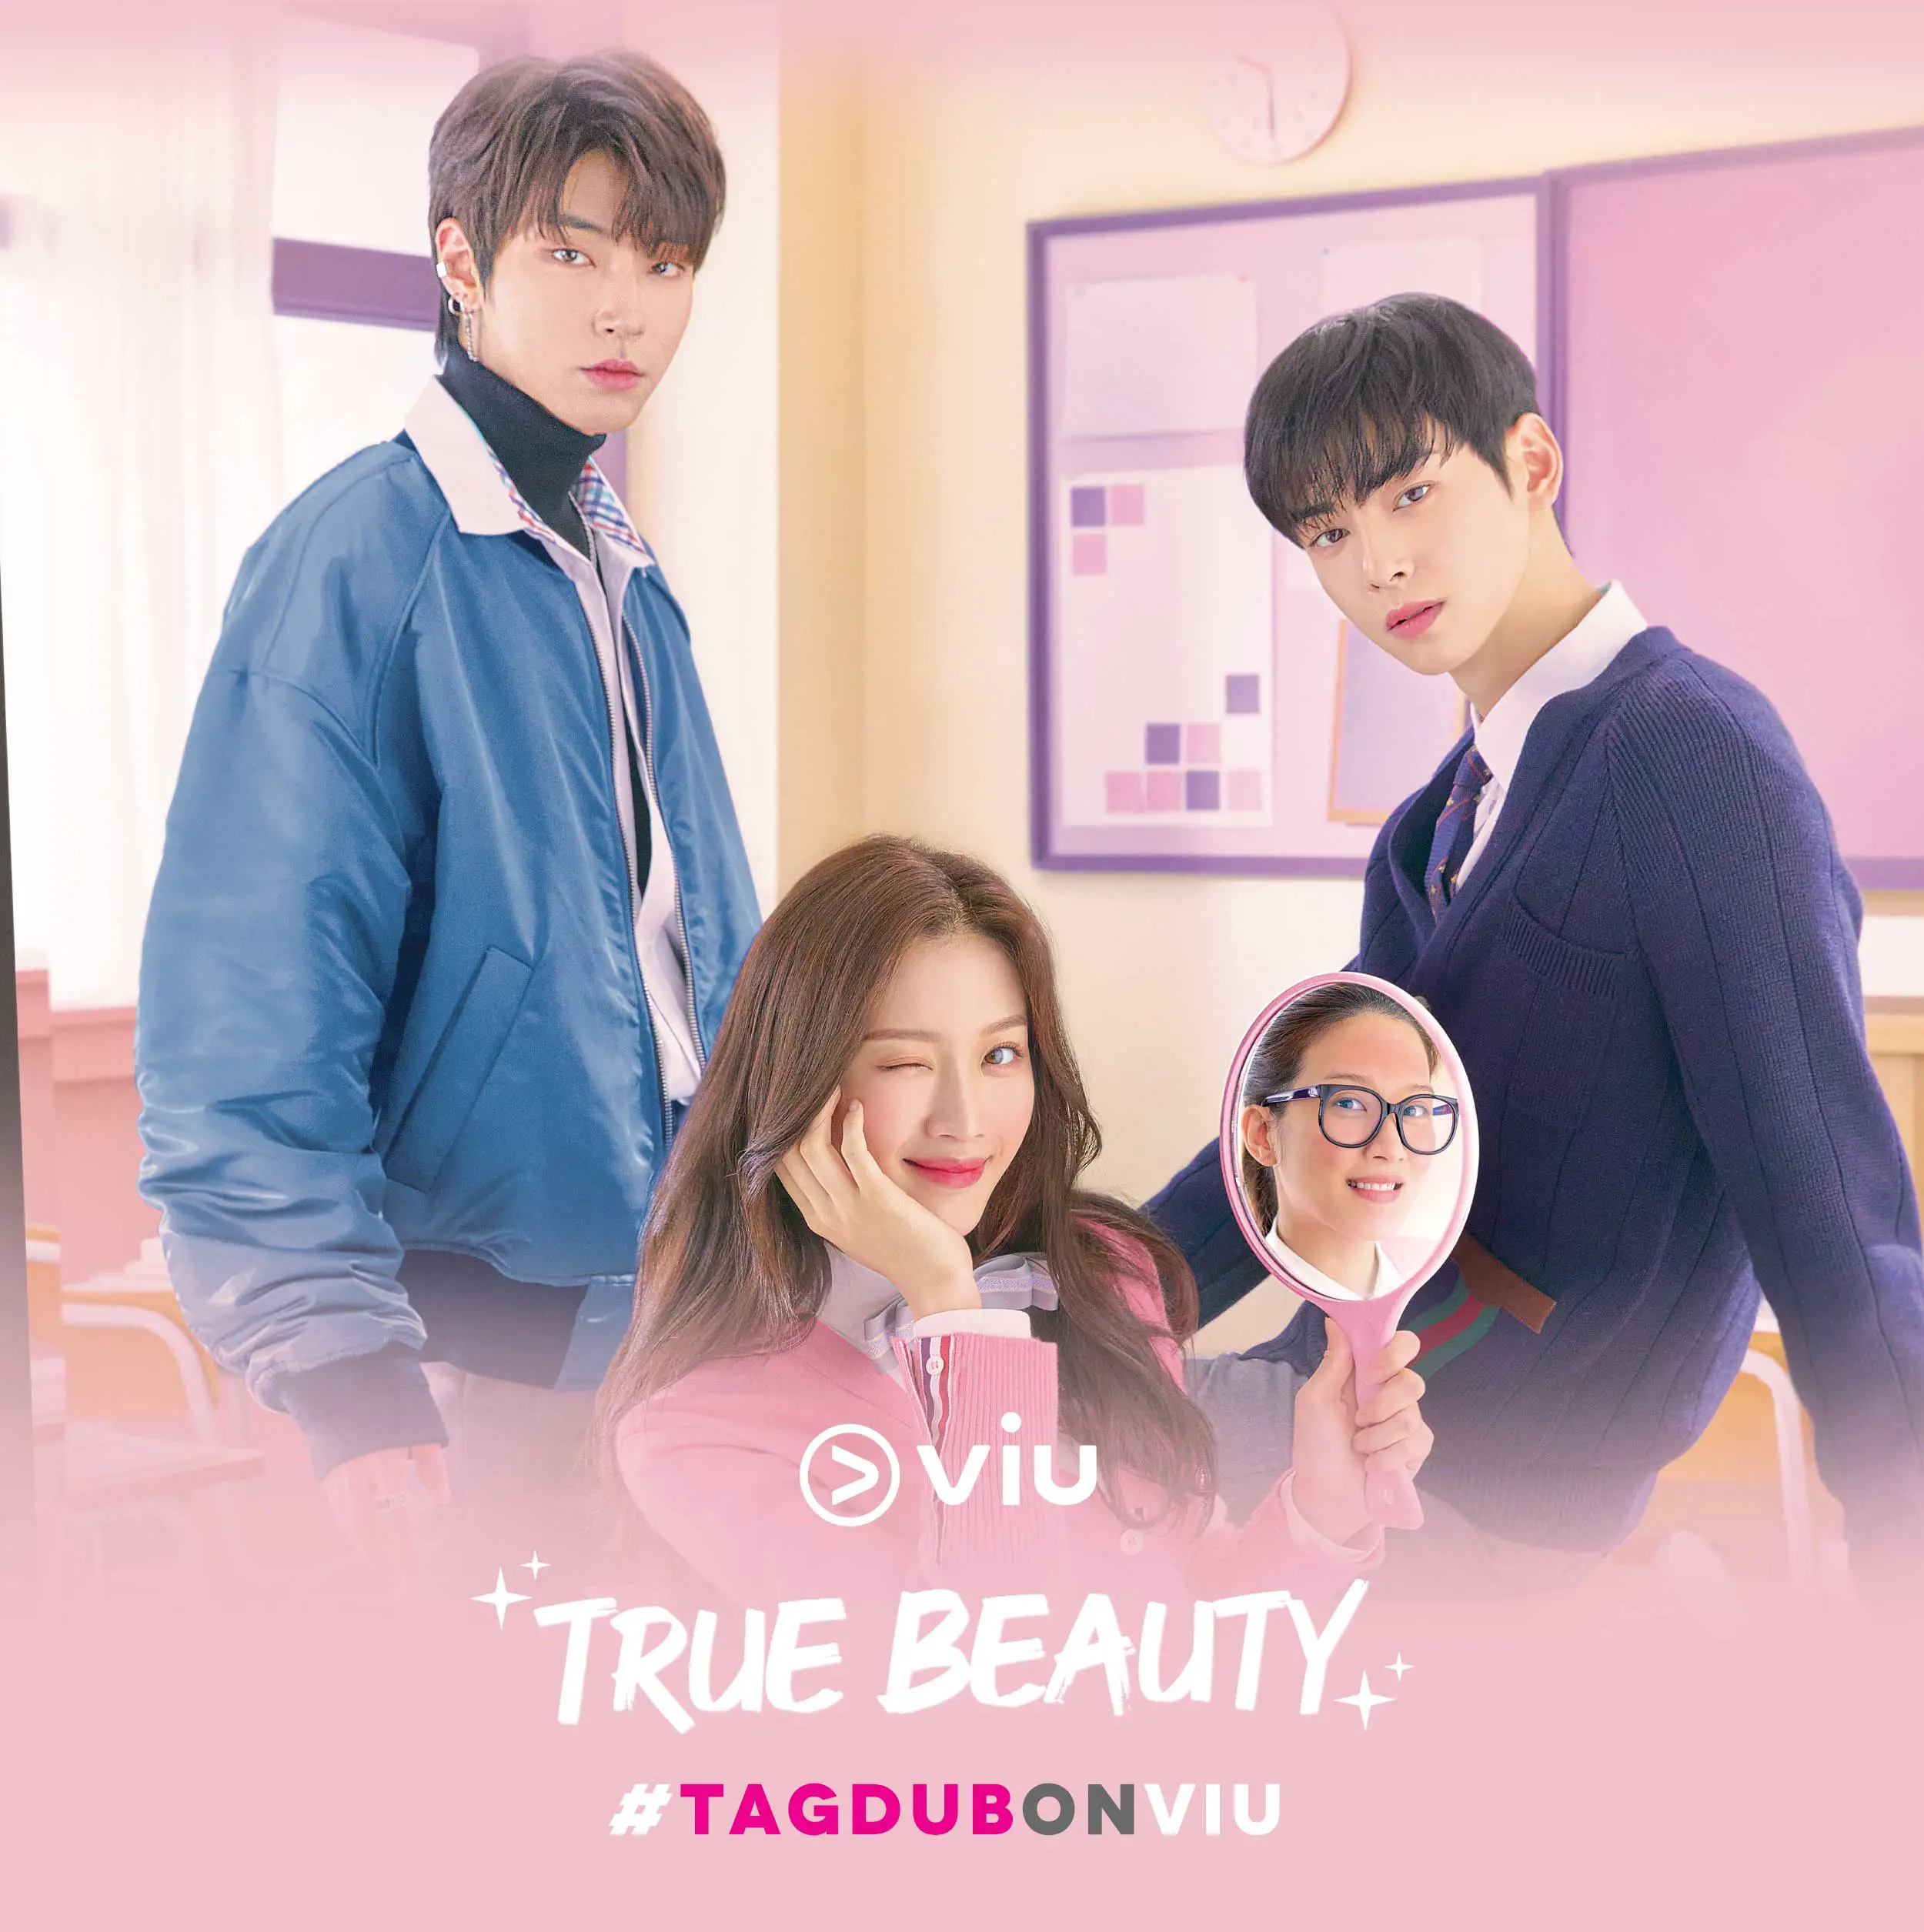 TagDub On Viu True Beauty